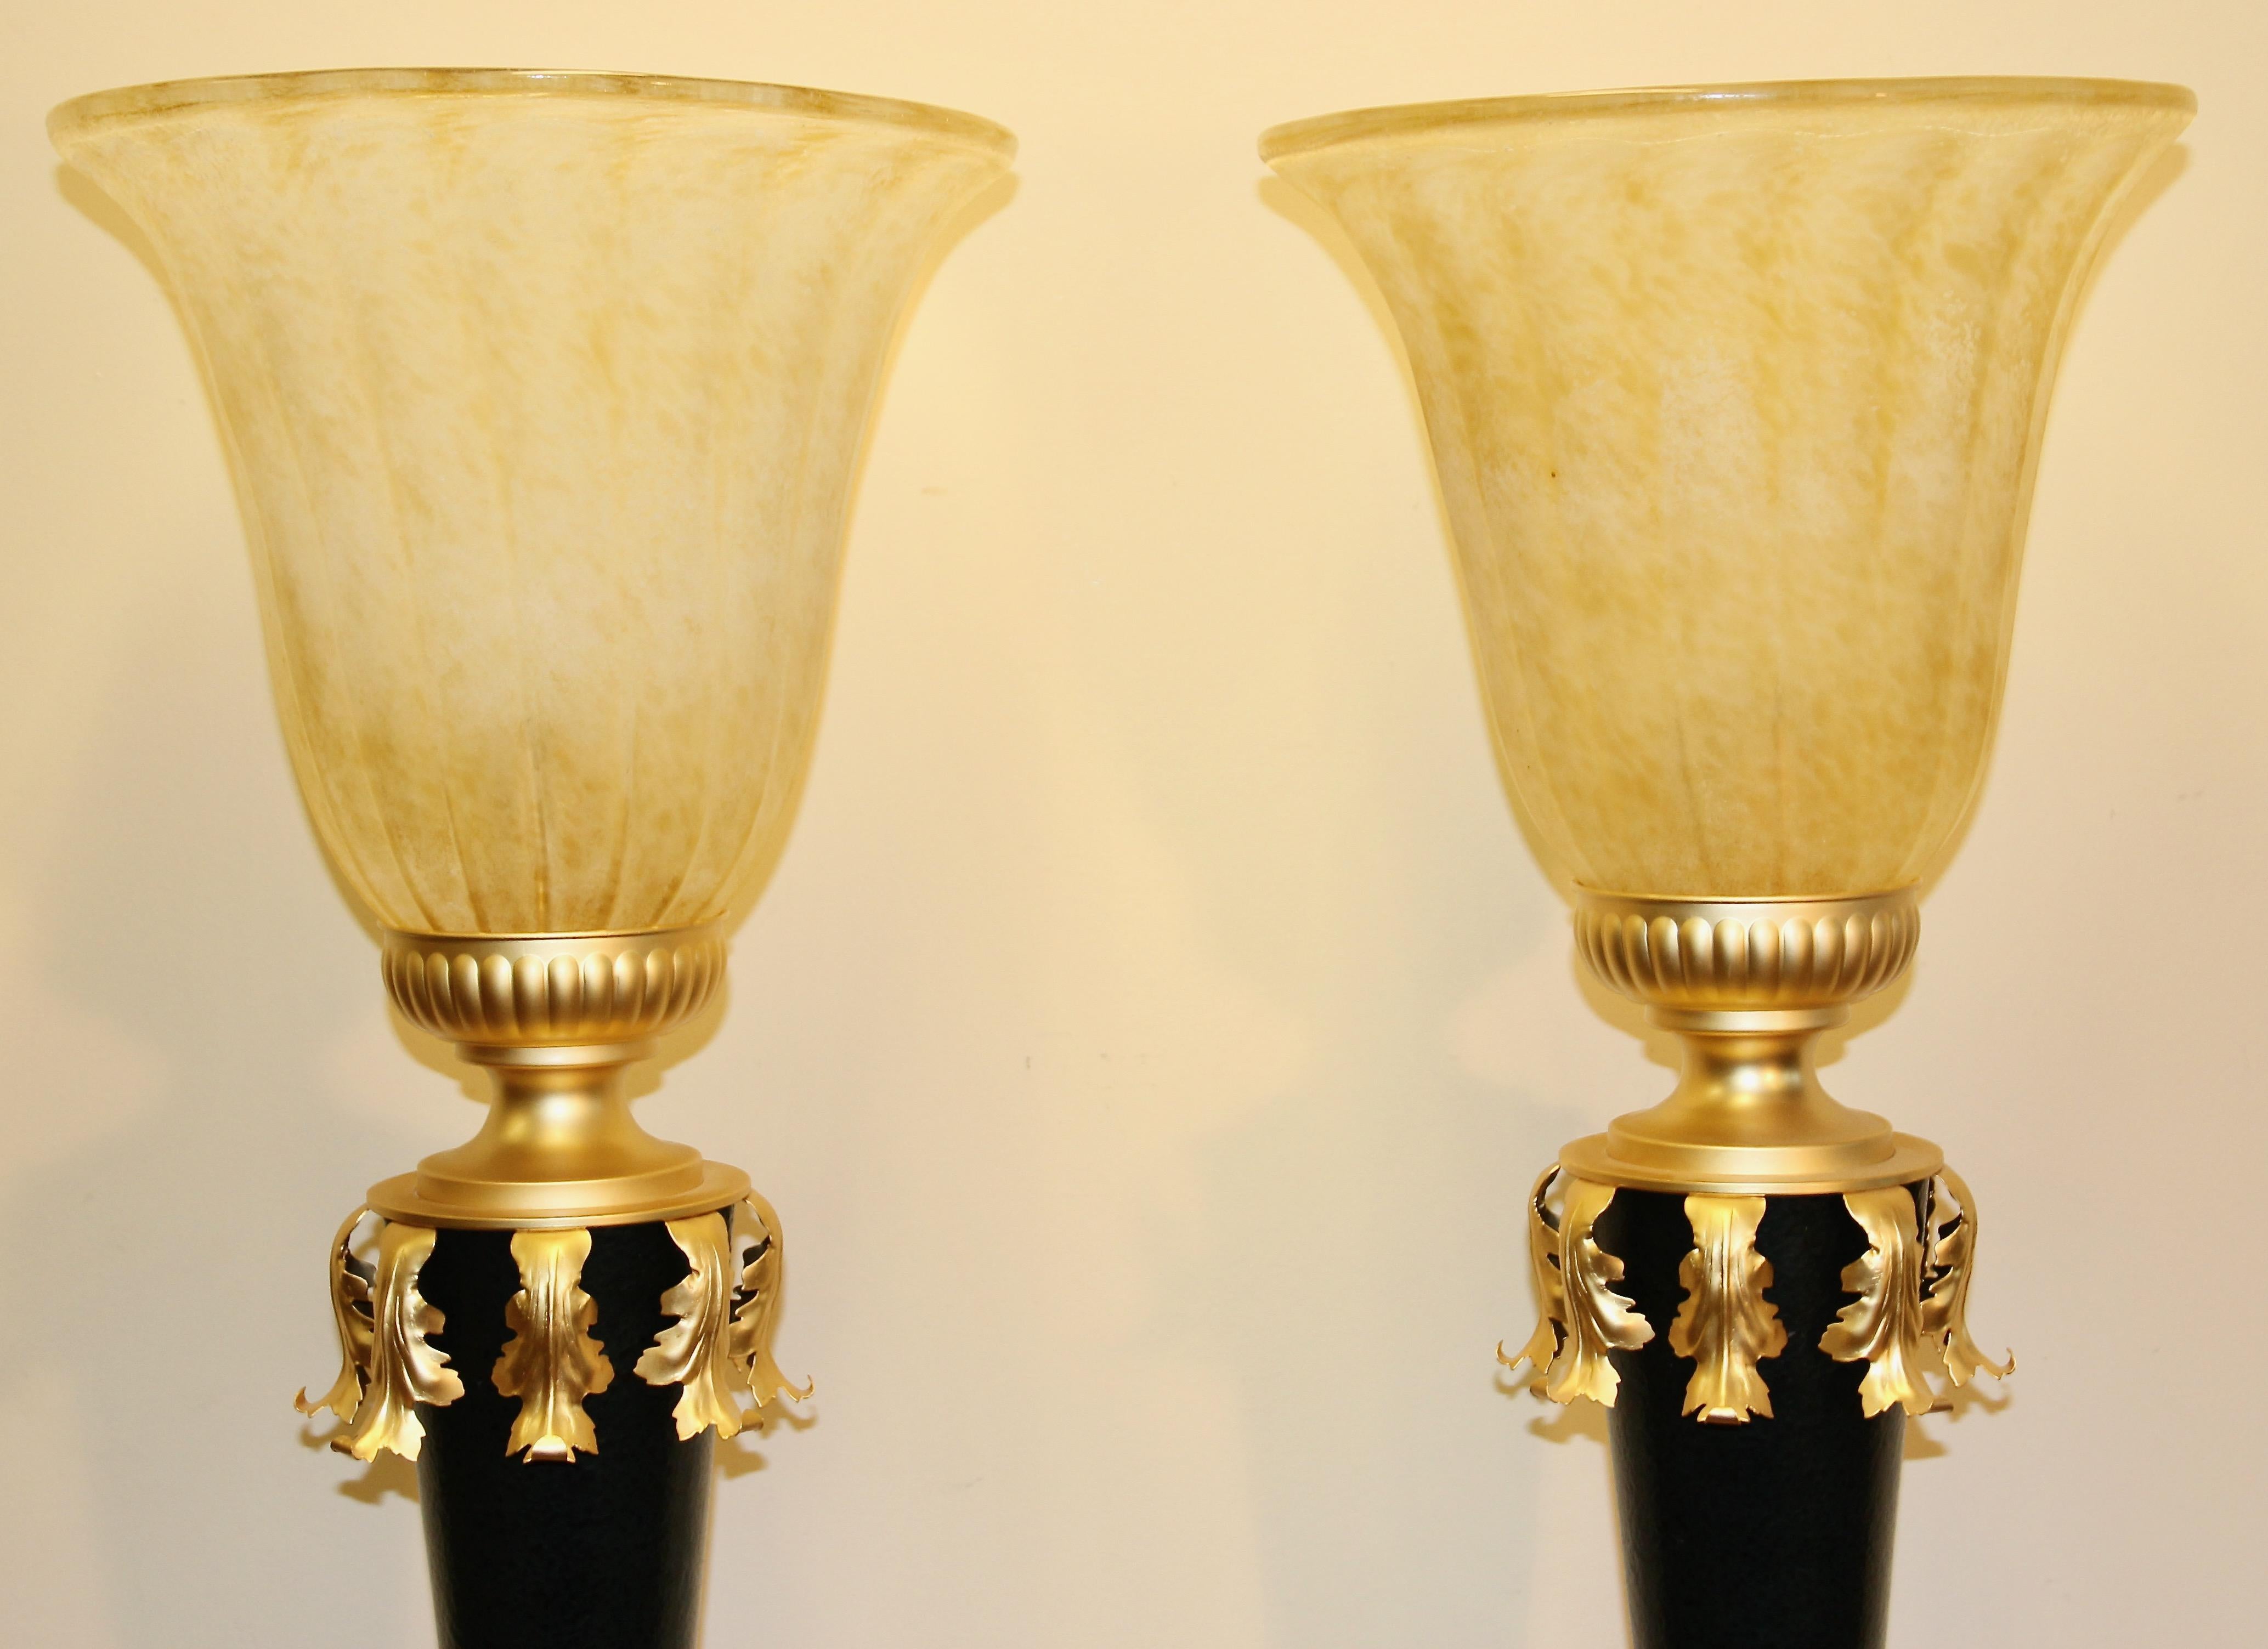 Lampes de table très décoratives, lourdes et de haute qualité.

Signes d'usure minimes.
Diamètre du bol en verre 34 cm (13,38 pouces).